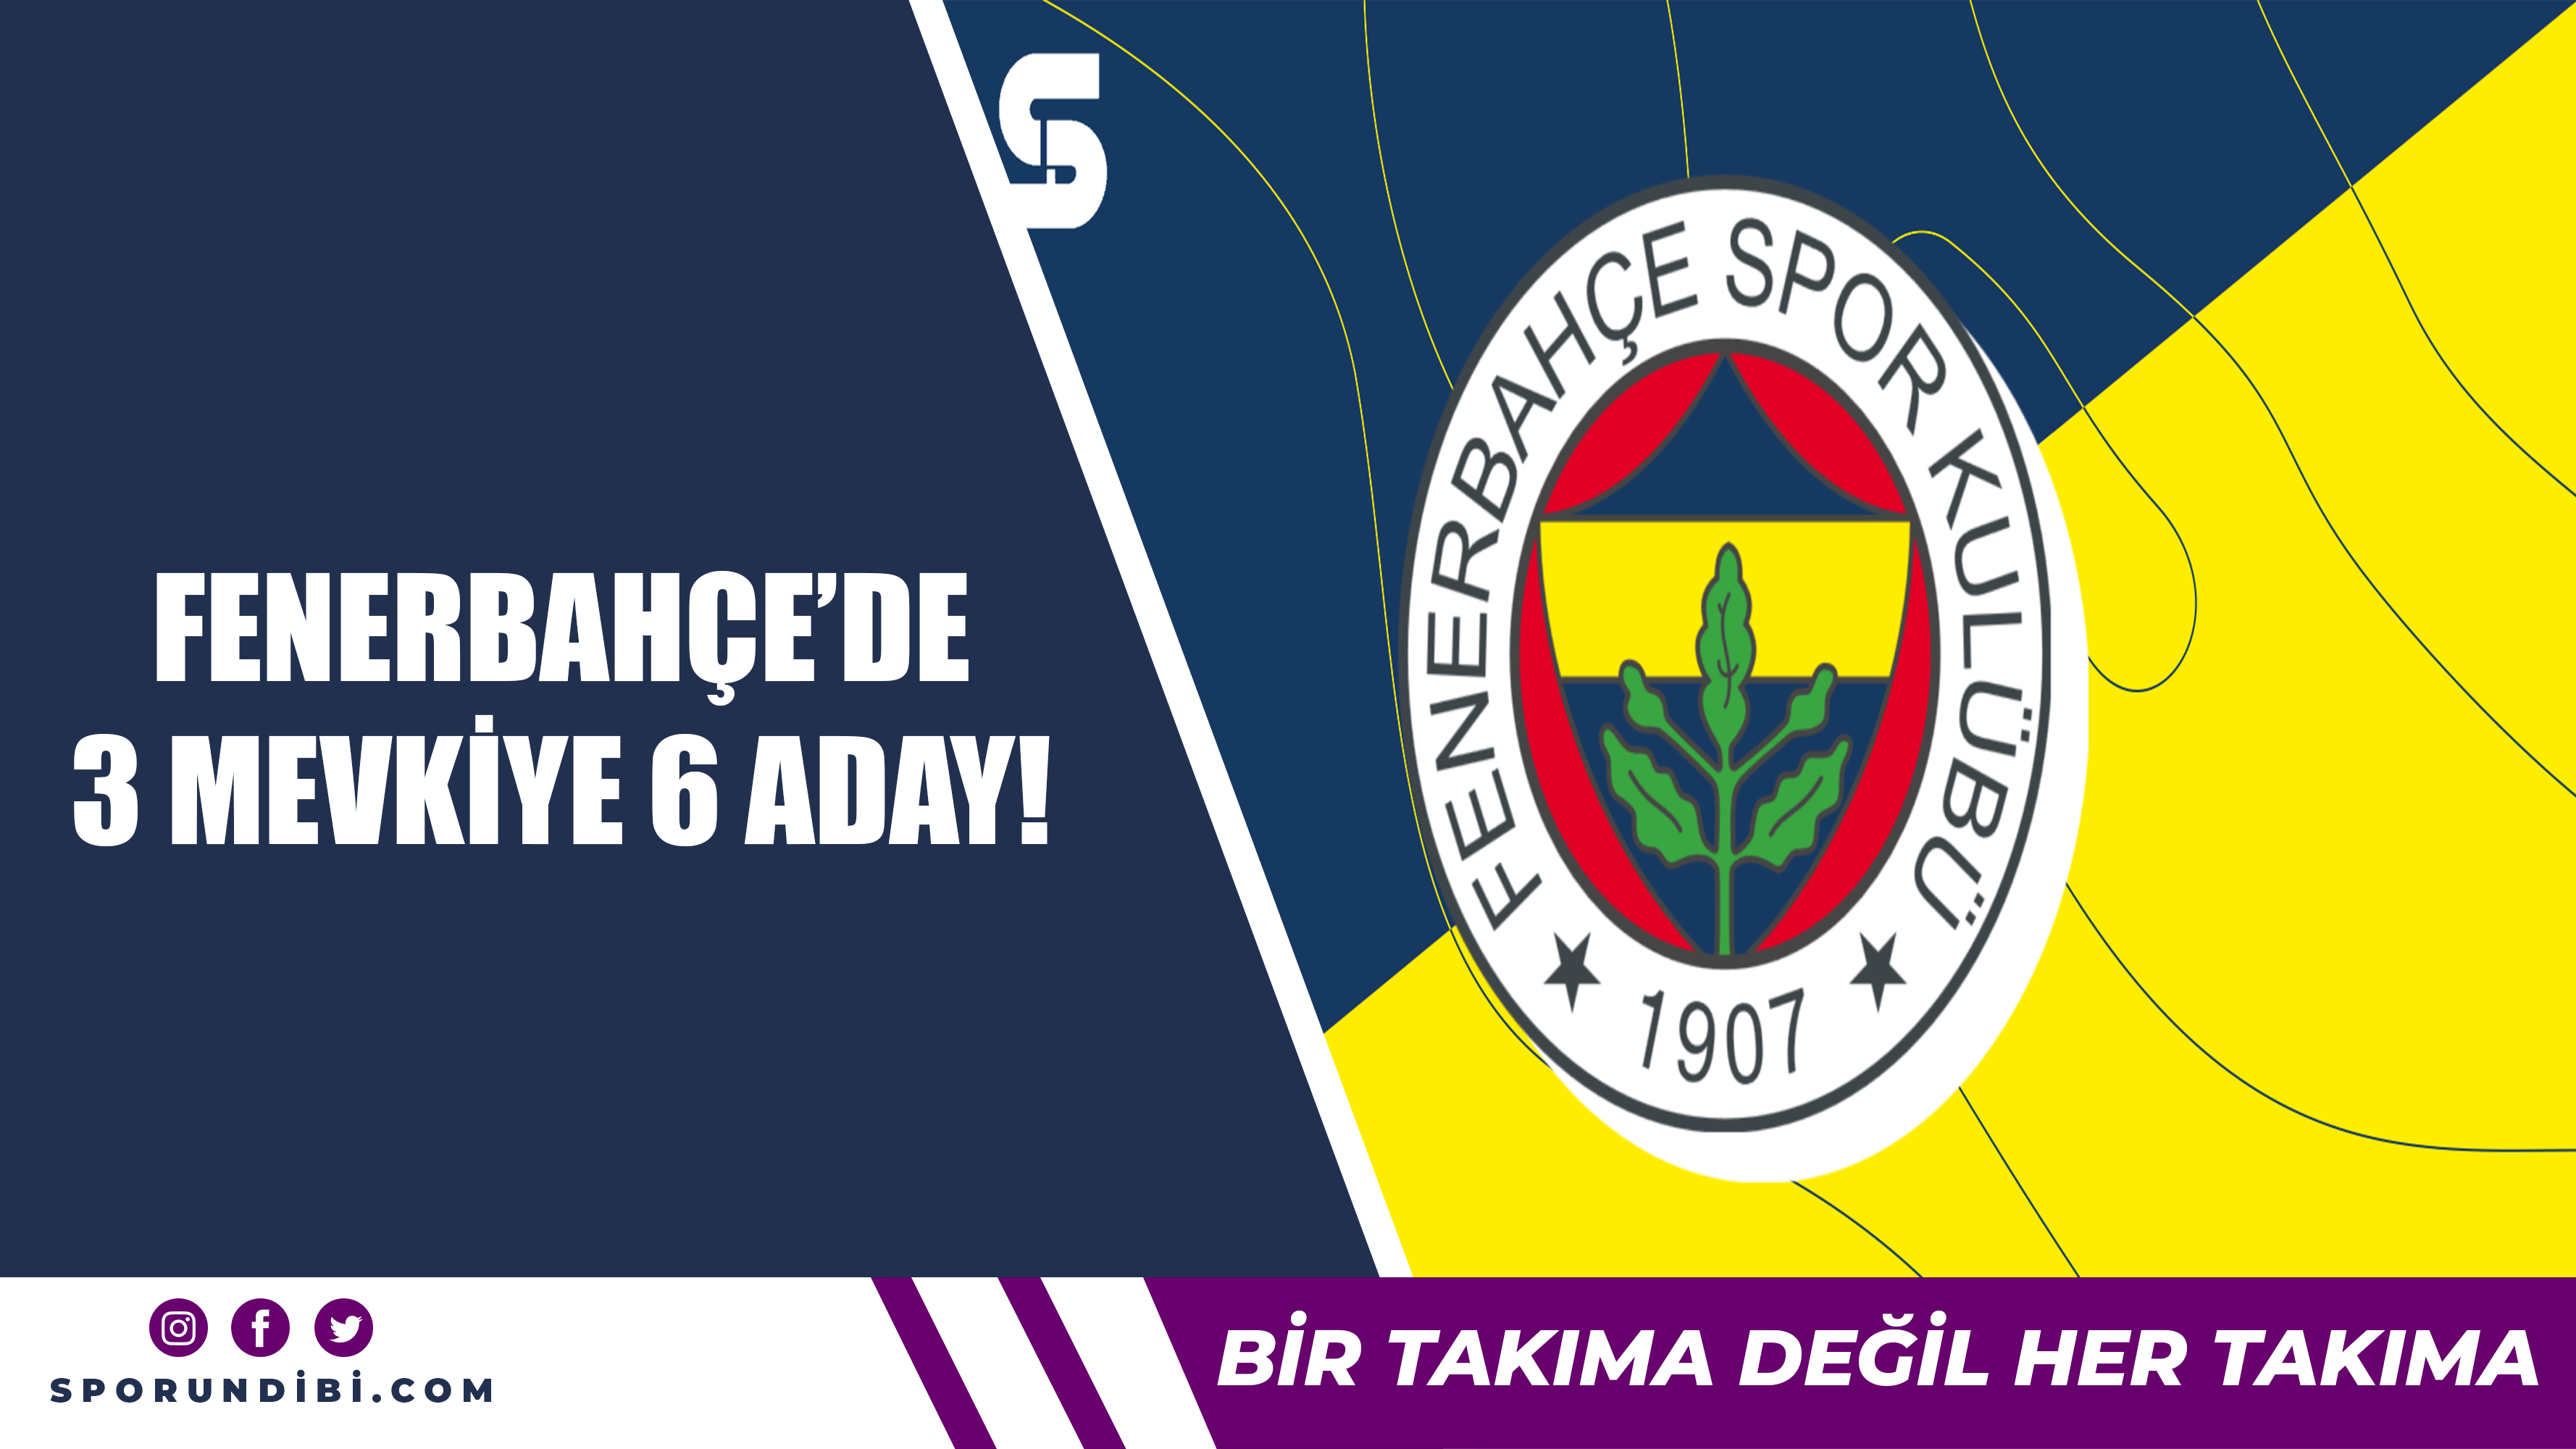 Fenerbahçe'de 3 mevkiye 6 aday!